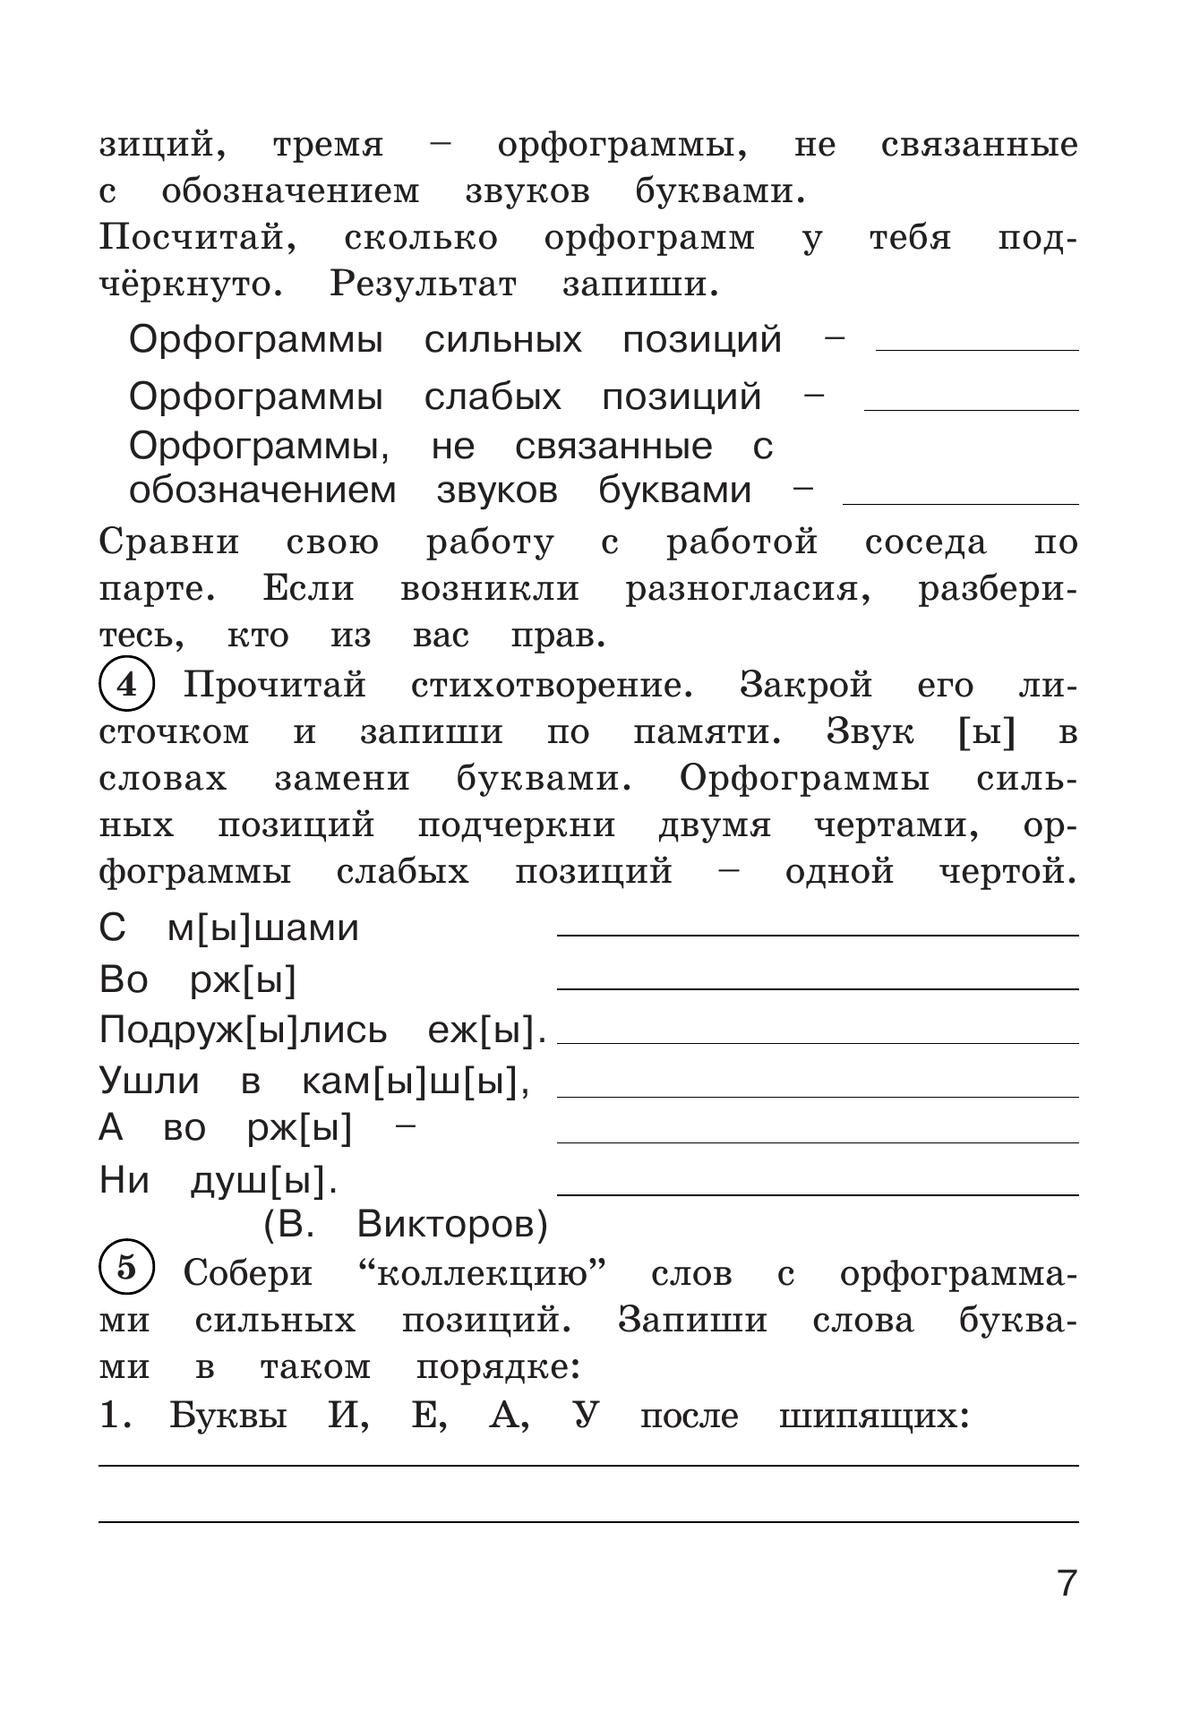 Рабочая тетрадь по русскому языку. 3 класс. В 2 частях. Часть 1 5